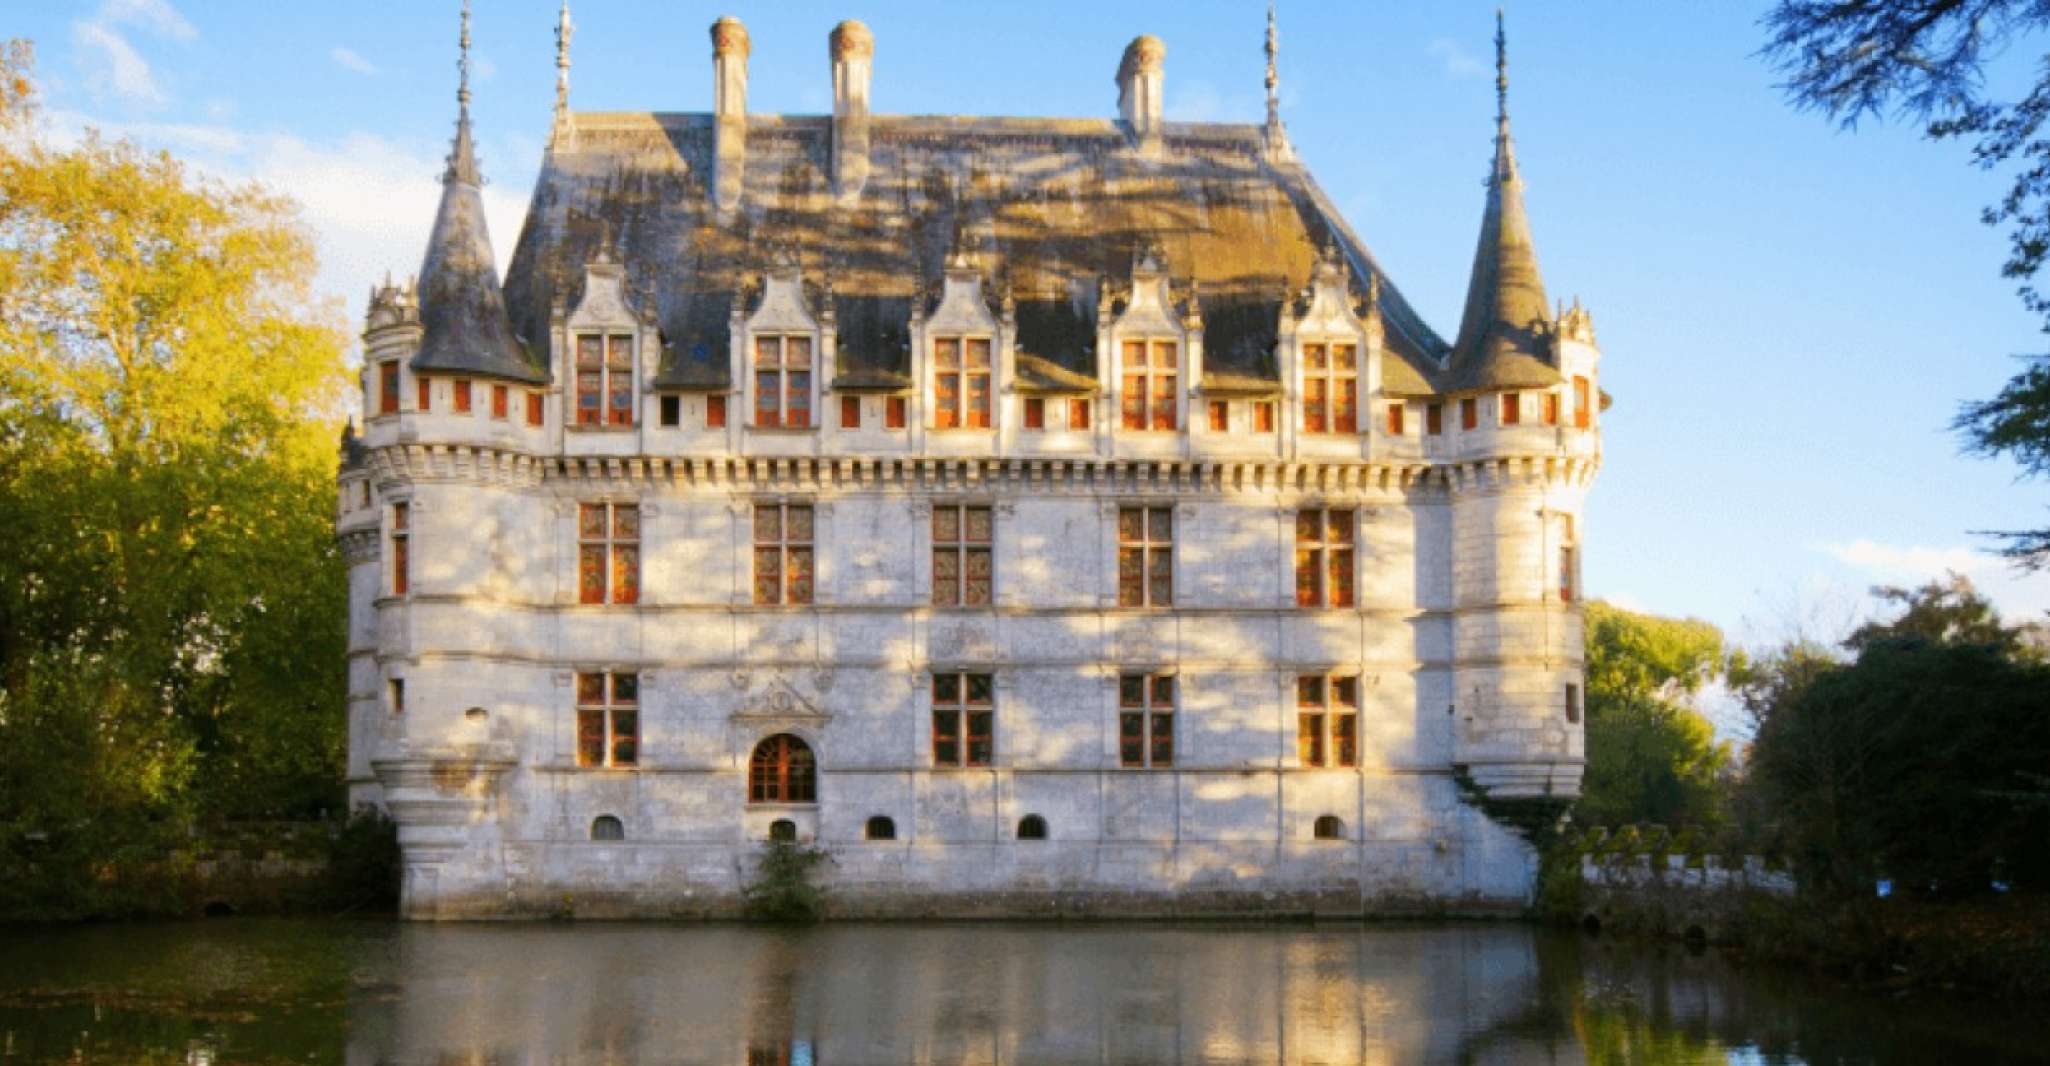 Château Loire Tour - Housity